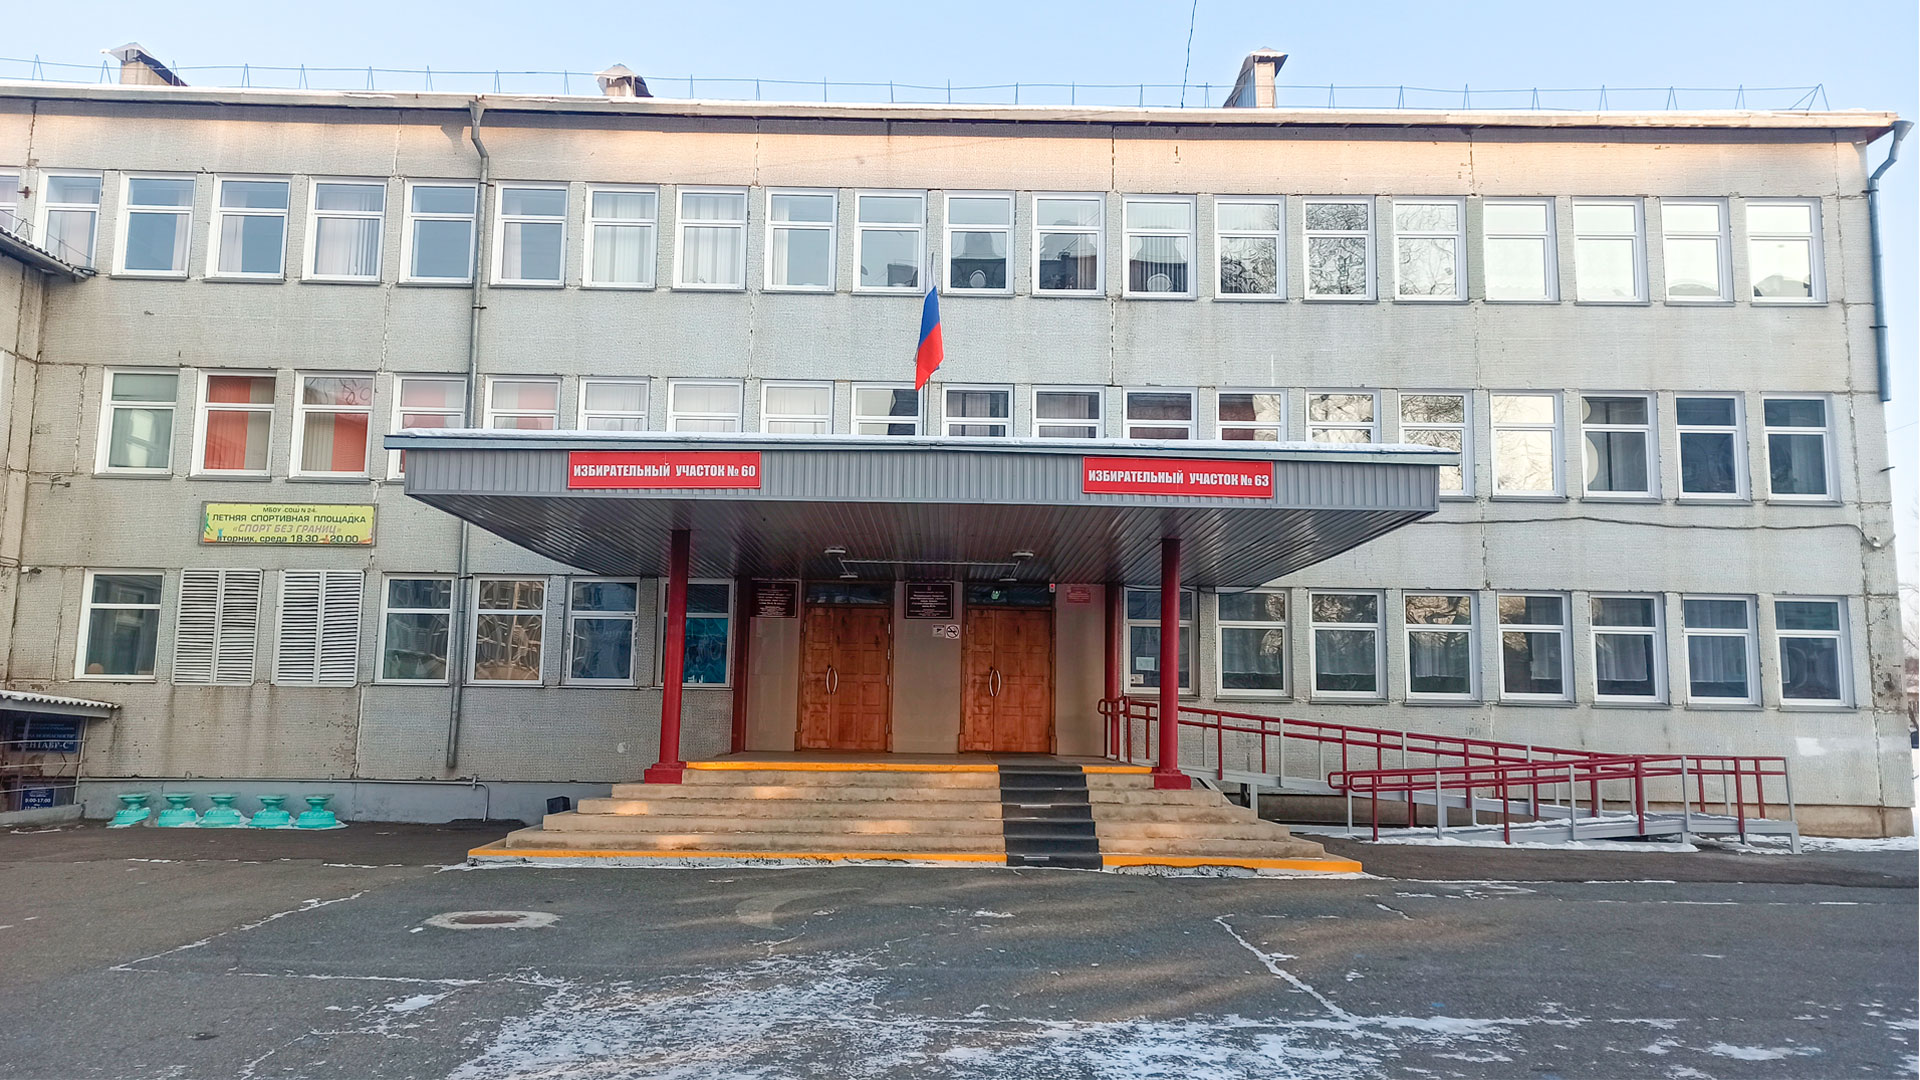 Центральный вход школы №24 г. Абакан.